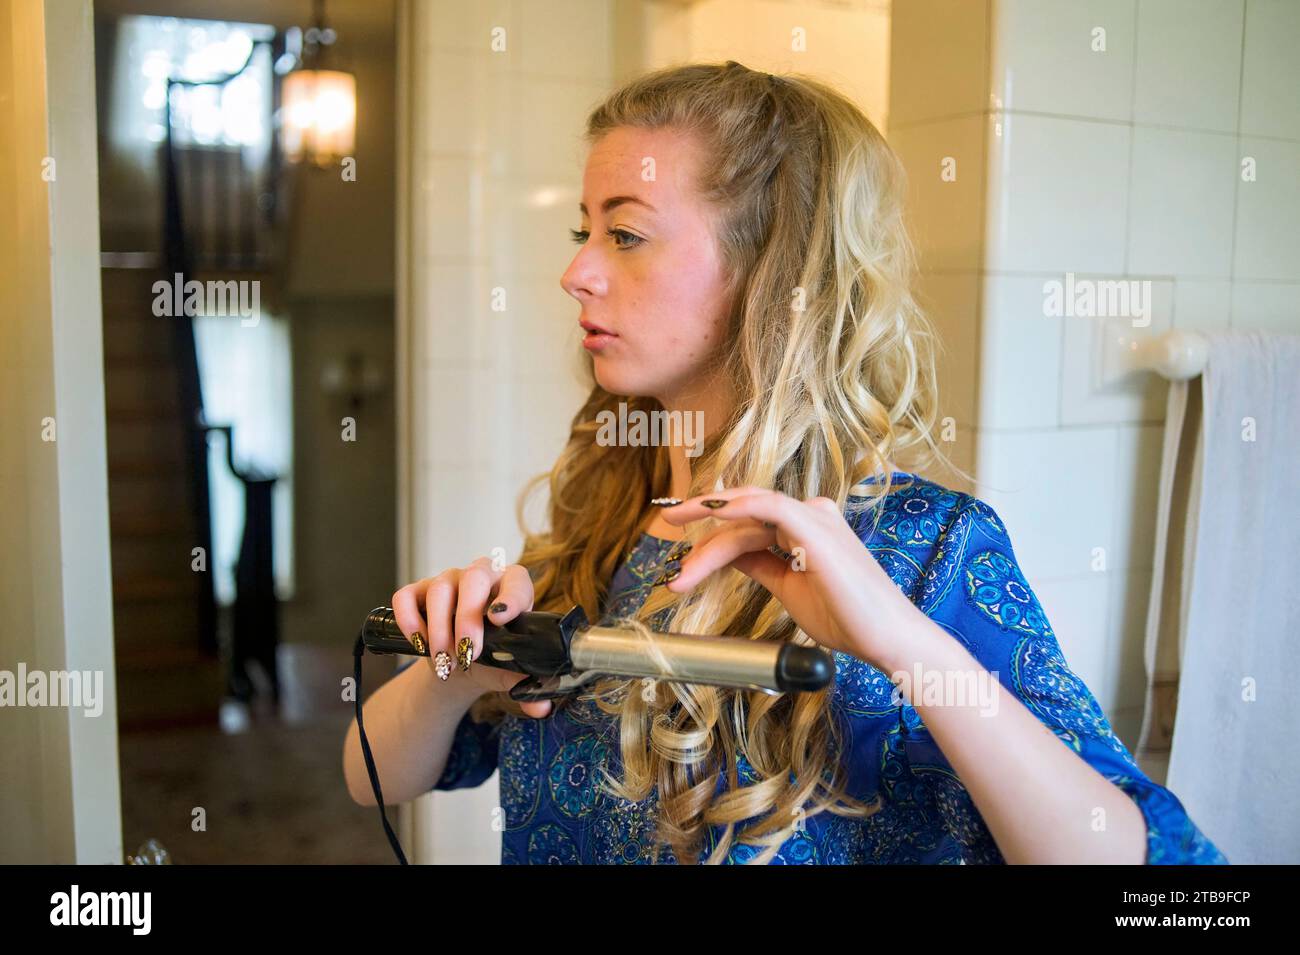 Das Teenager-Mädchen lockt ihr langes blondes Haar, während sie sich auf ihren Abschlussball vorbereitet; Lincoln, Nebraska, Vereinigte Staaten von Amerika Stockfoto